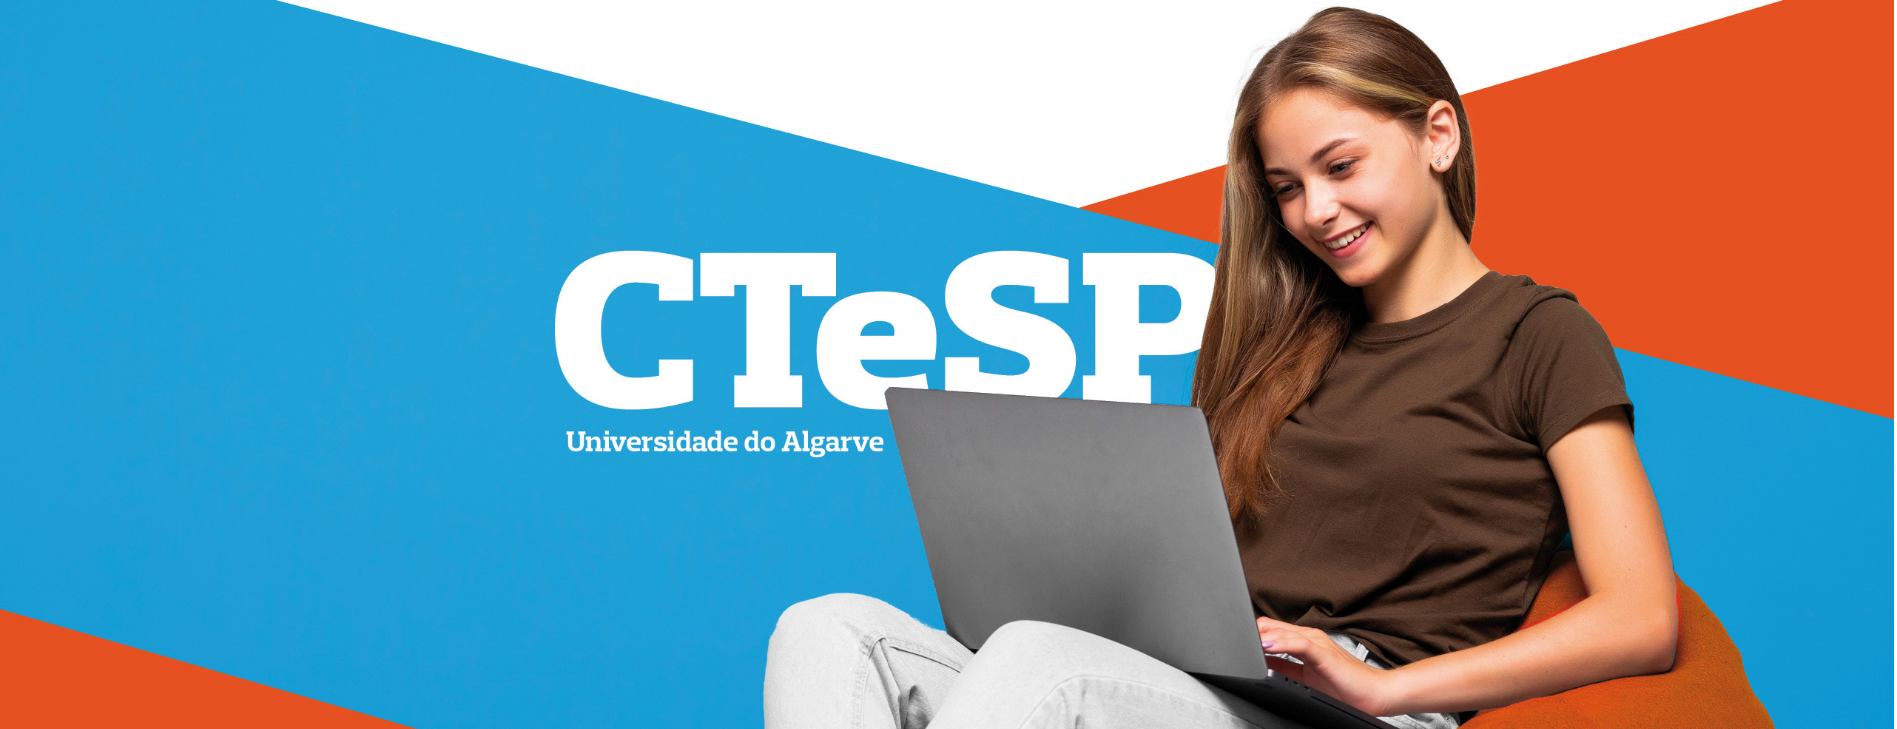 Universidade do Algarve: Candidaturas online a Cursos Técnicos Superiores Profissionais terminam a 22 de Agosto